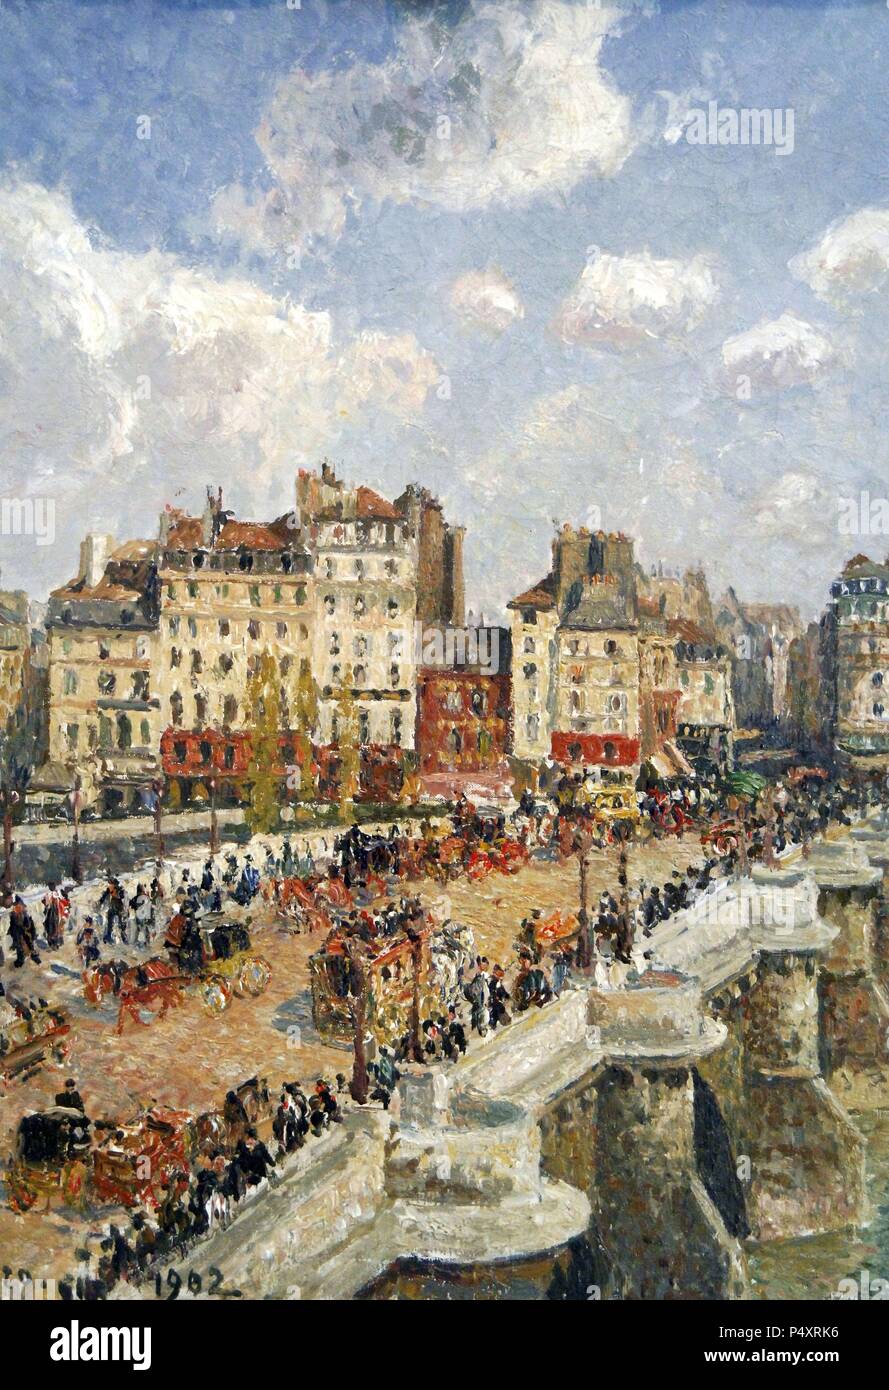 Camille Pissarro (1830-1930). Pittore Francese, fondatore del movimento impressionista. "Le Pont Neuf" (1902). Museo di Belle Arti. Budapest. Ungheria. Foto Stock